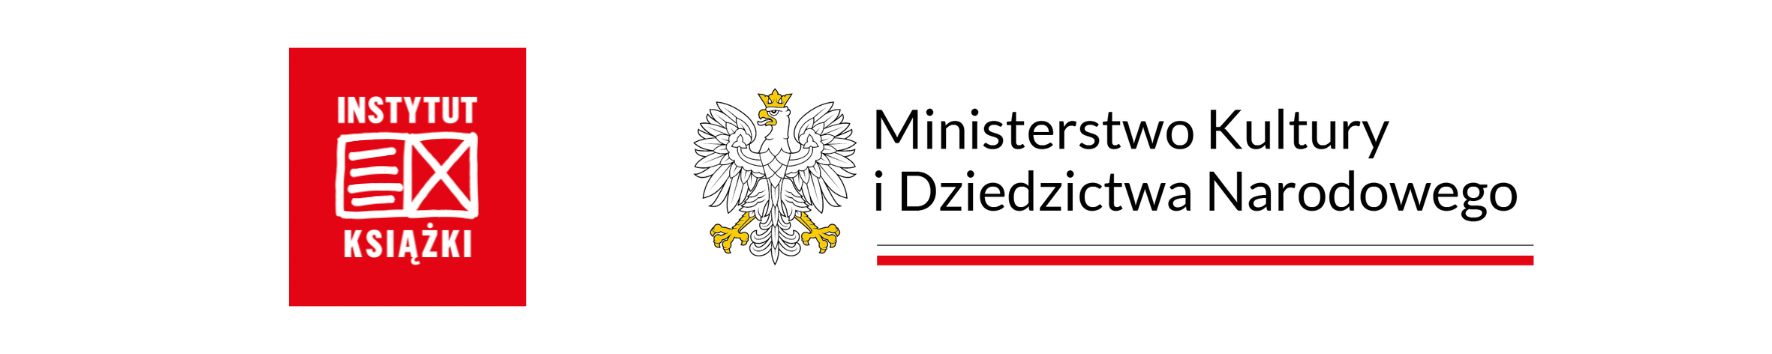 Logotypy Instytut Książki oraz Ministerwstwo Kultury i Dziedzictwa Narodowego